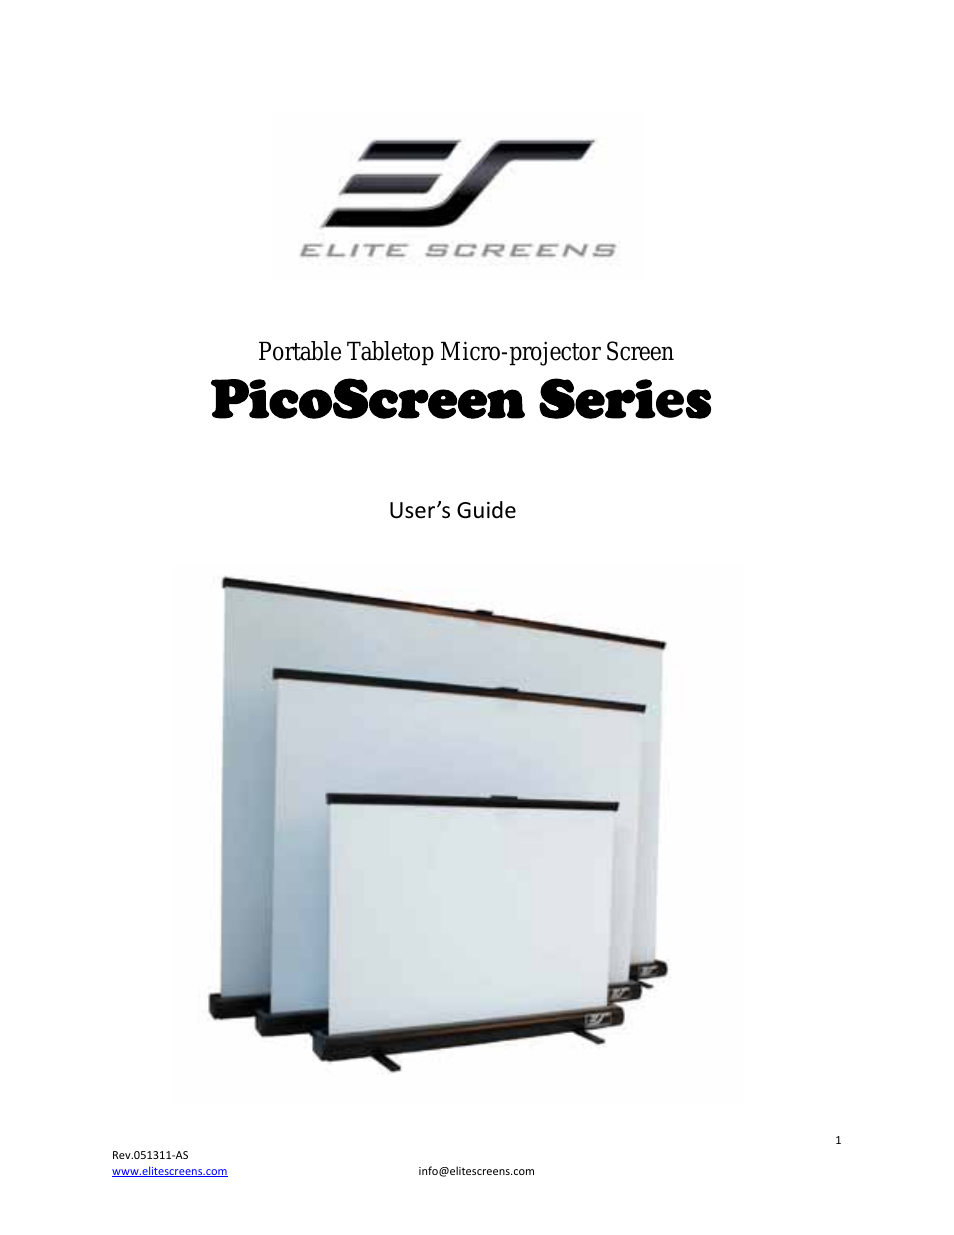 PicoScreen™ Series